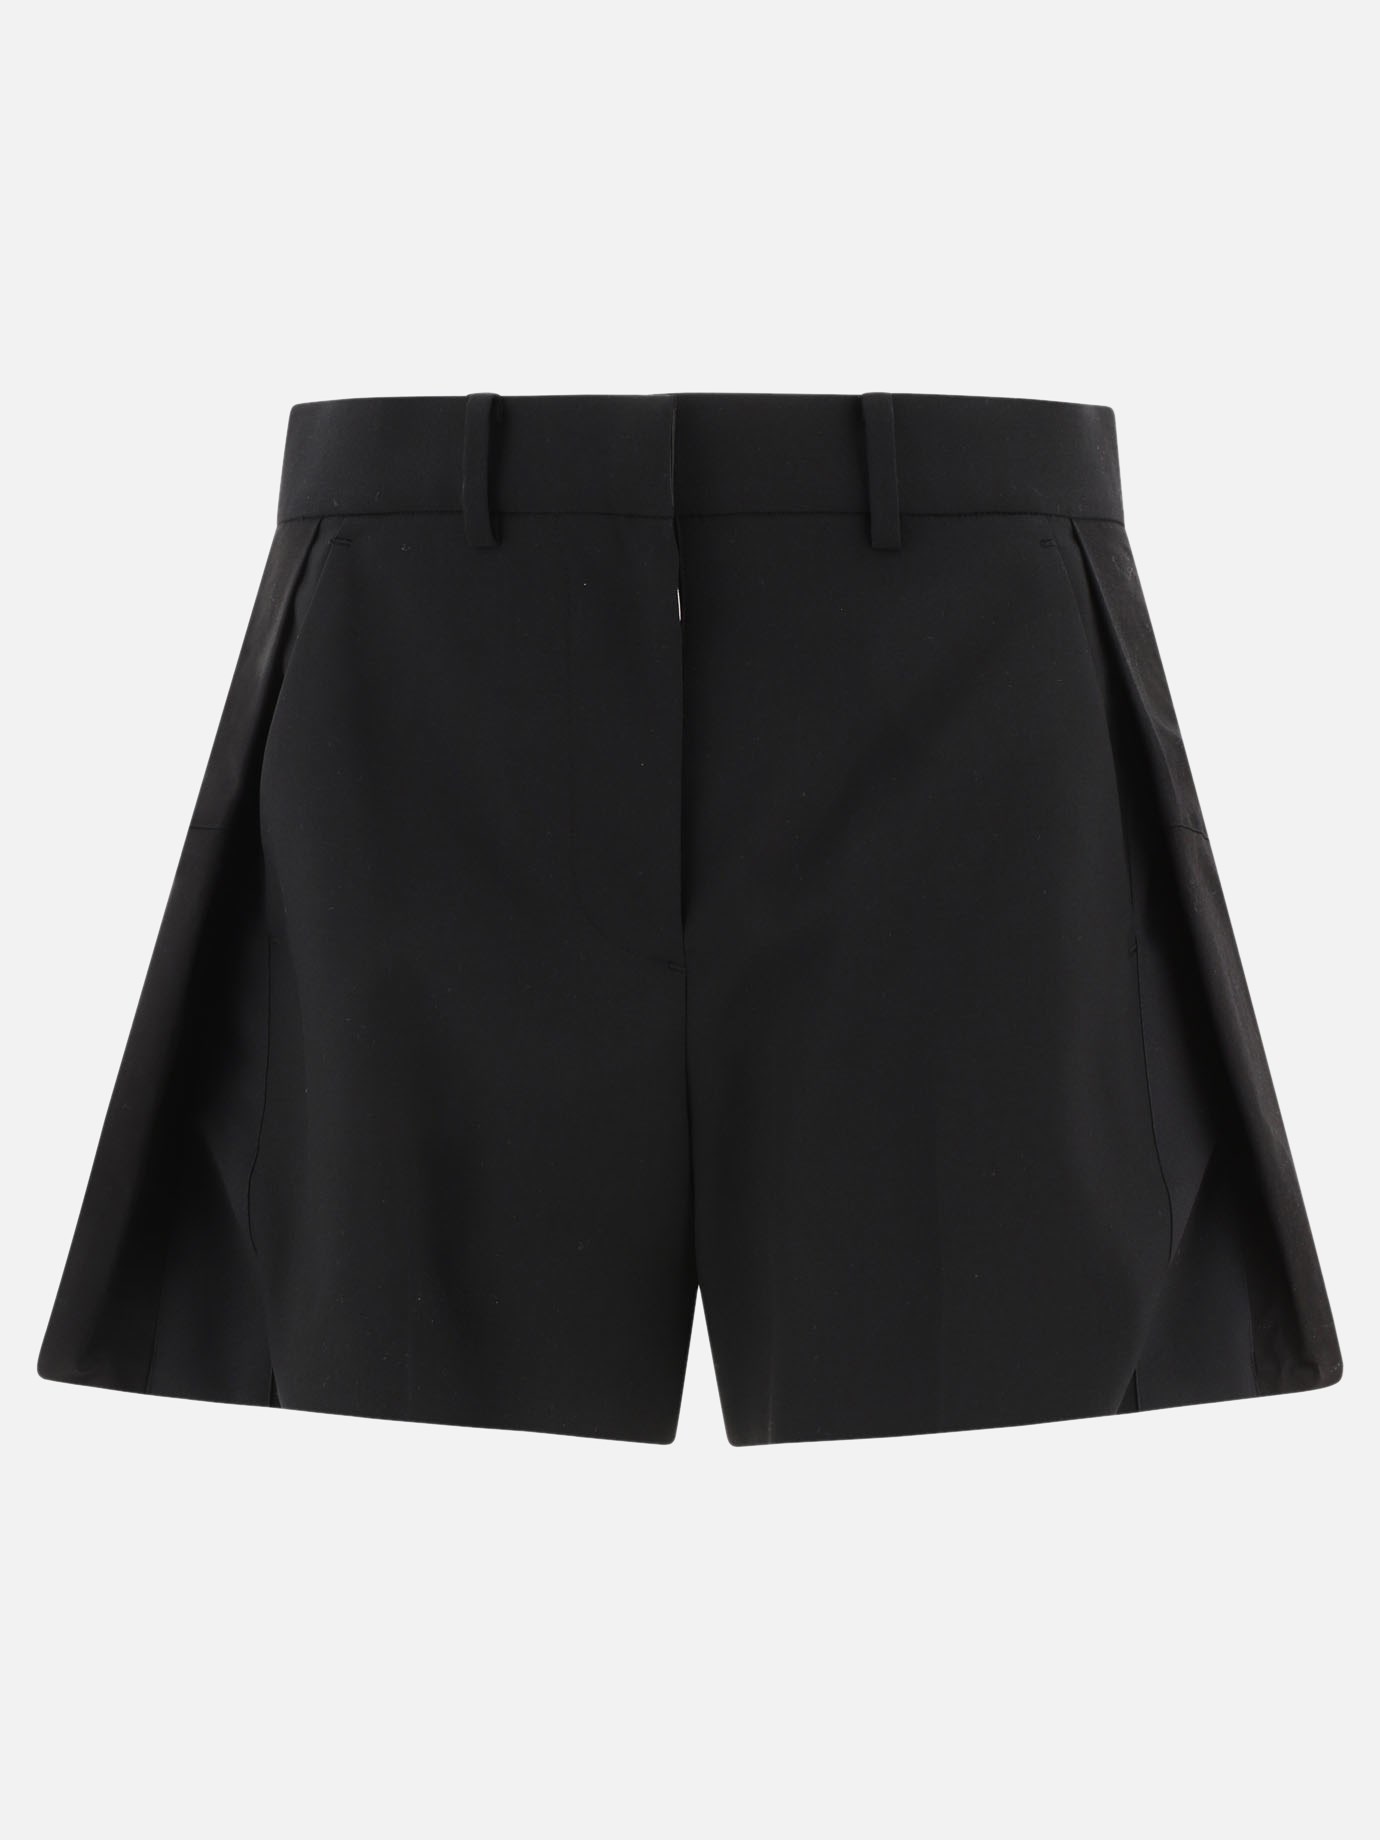 Paneled shorts